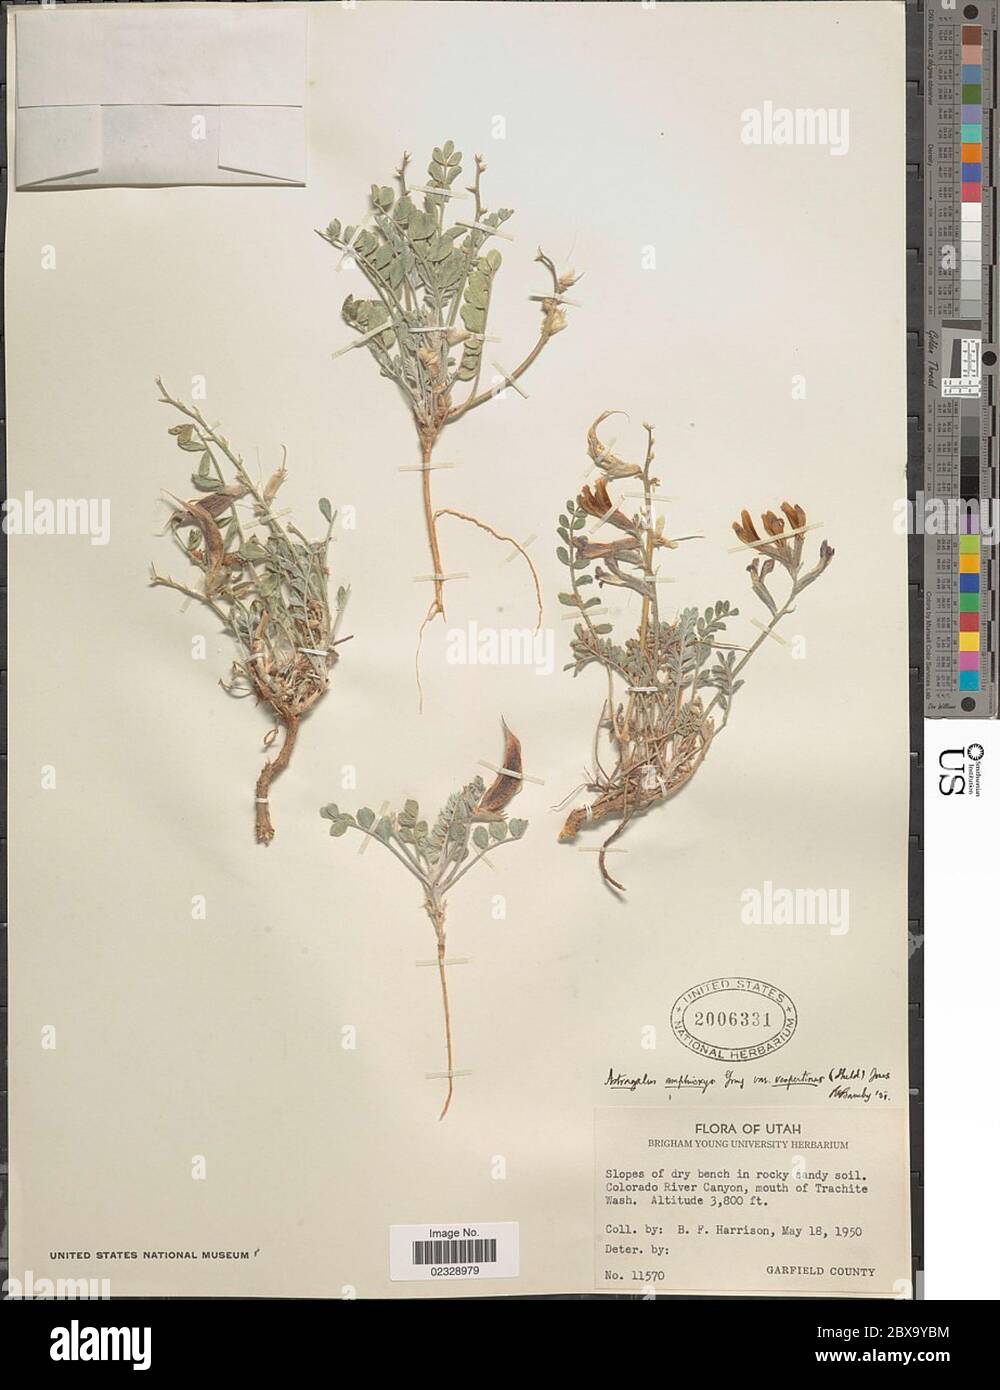 Astragalus vespertinus E Sheld Astragalus vespertinus E Sheld. Stock Photo